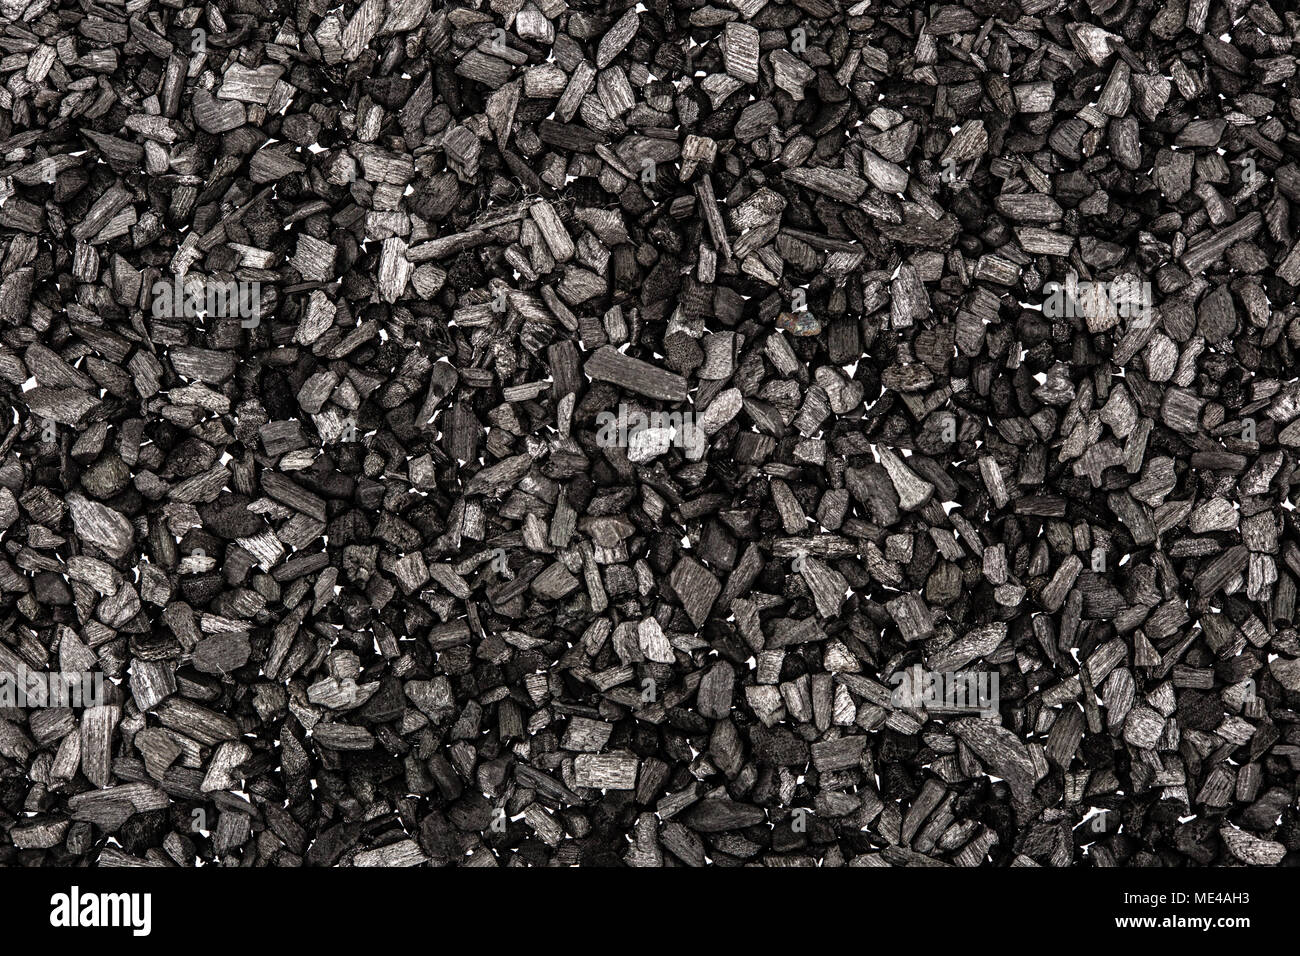 Von Black Charcoal closeup Hintergrund. Kohle Textur, Ansicht von oben.  Texturen Hintergrund Stockfotografie - Alamy